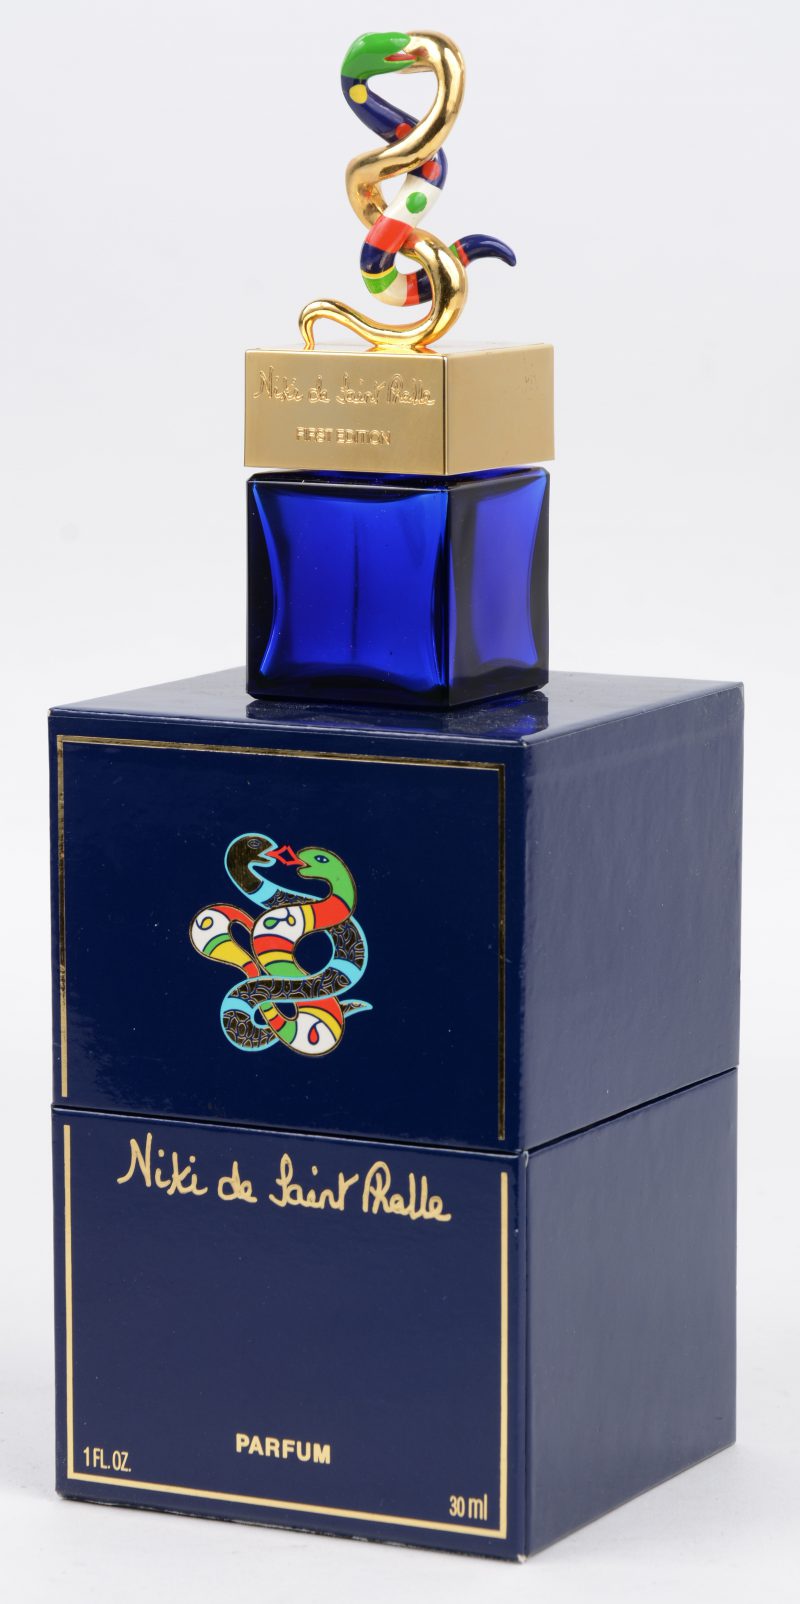 Een blauw glazen parfumflesje, getooid met een werkje van de kunstenares. In doosje.